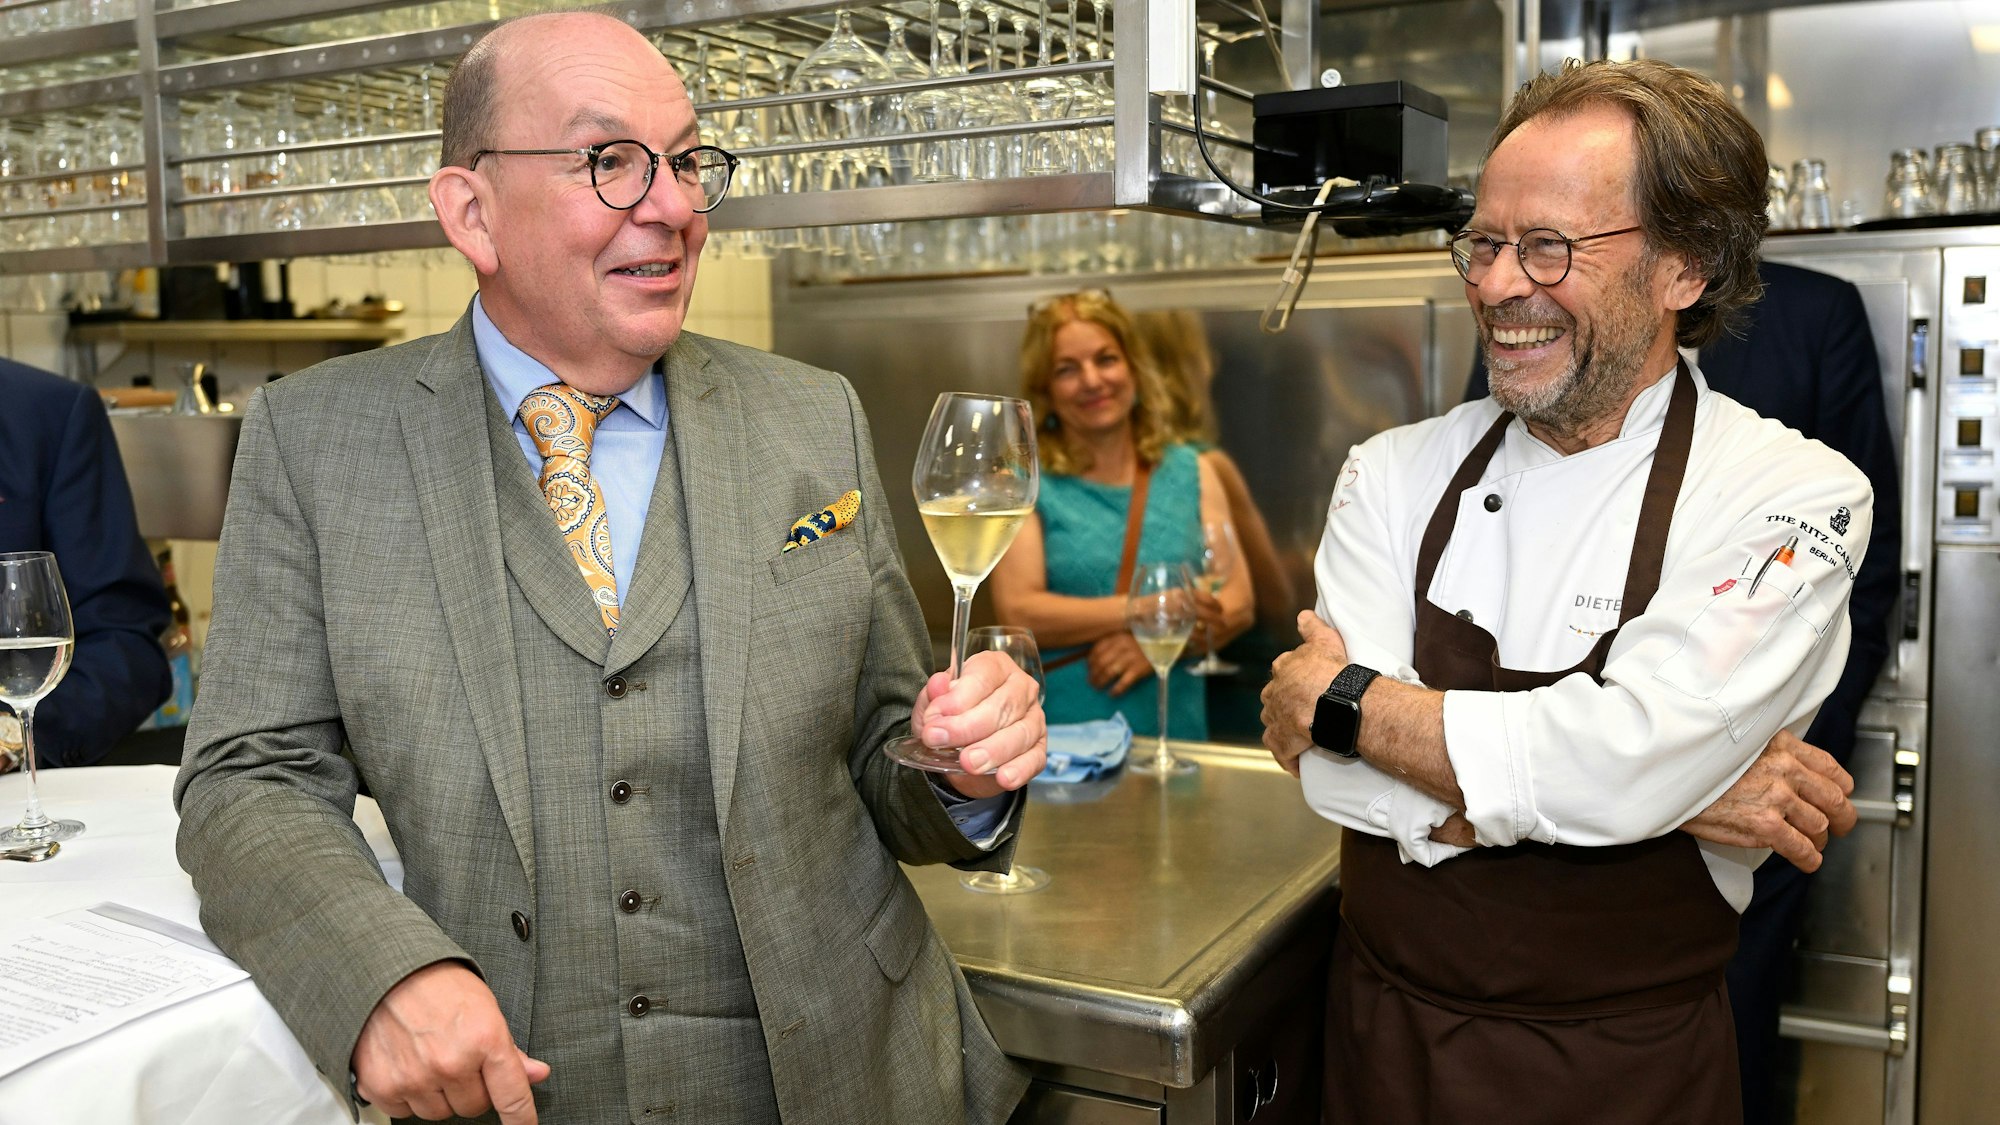 Ein Koch unterhält sich lachend mit einem Gast in der Küche, der ein Weinglas in der Hand hält.